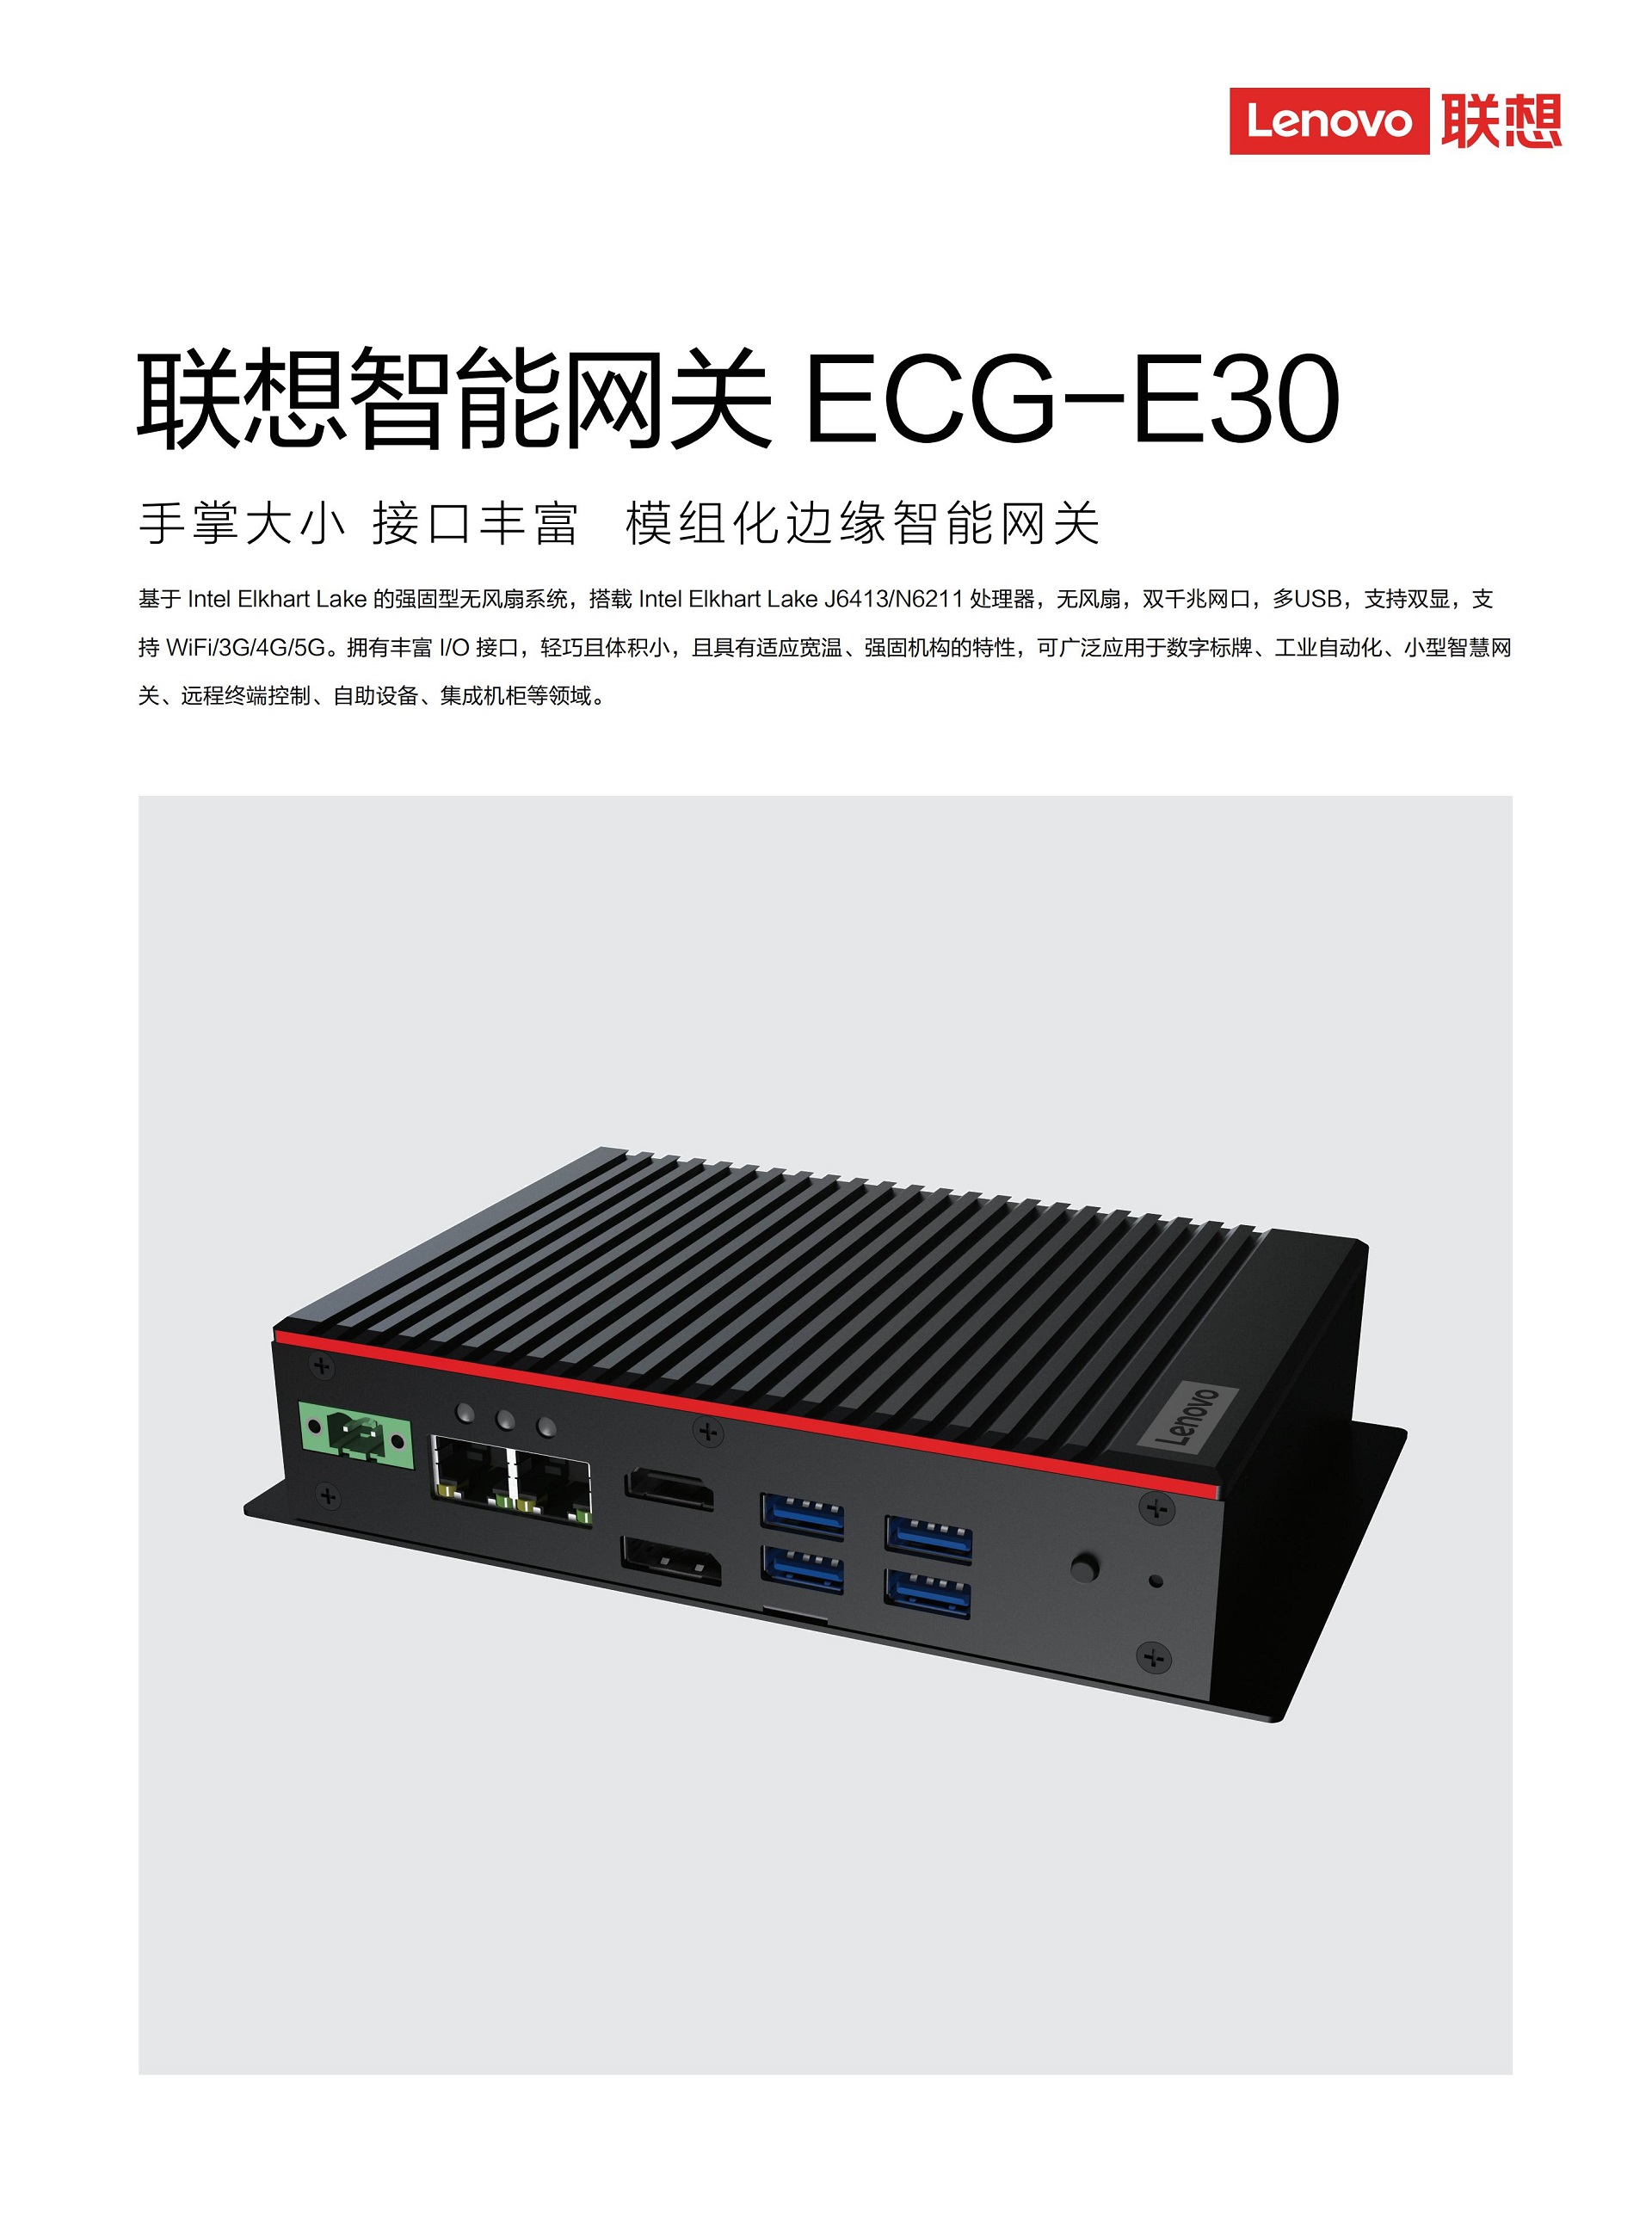 Lenovo+ECG-E30_产品彩页_20220725_00